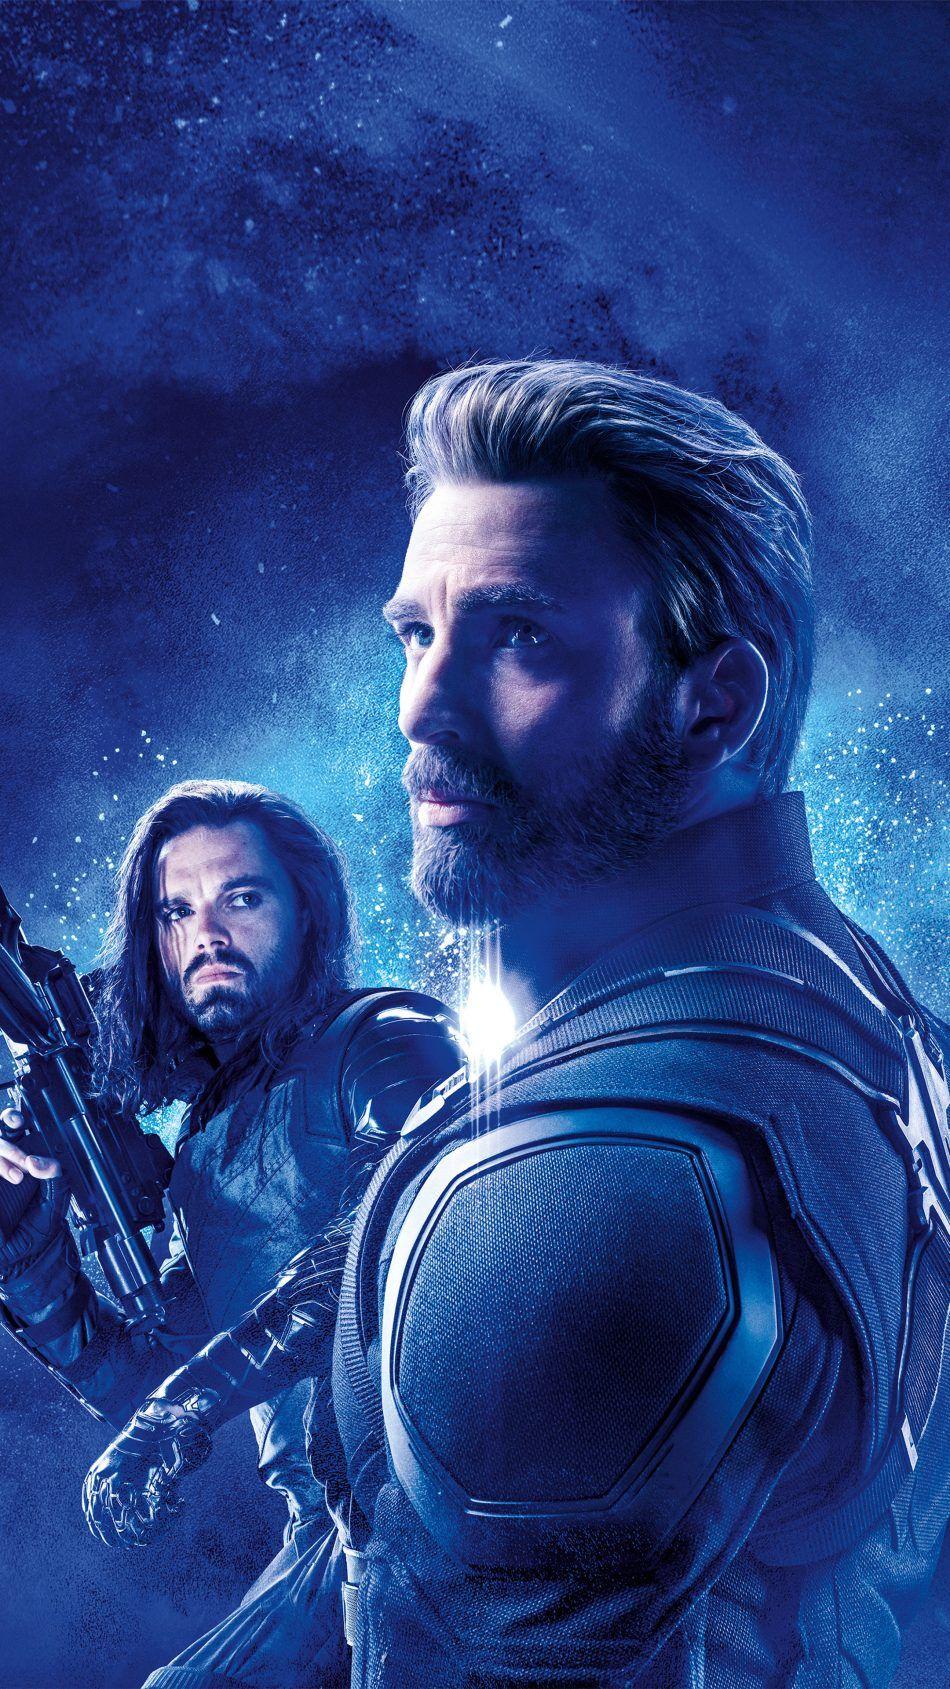 Captain America & Bucky Barnes In Avengers Endgame Free 4K Ultra